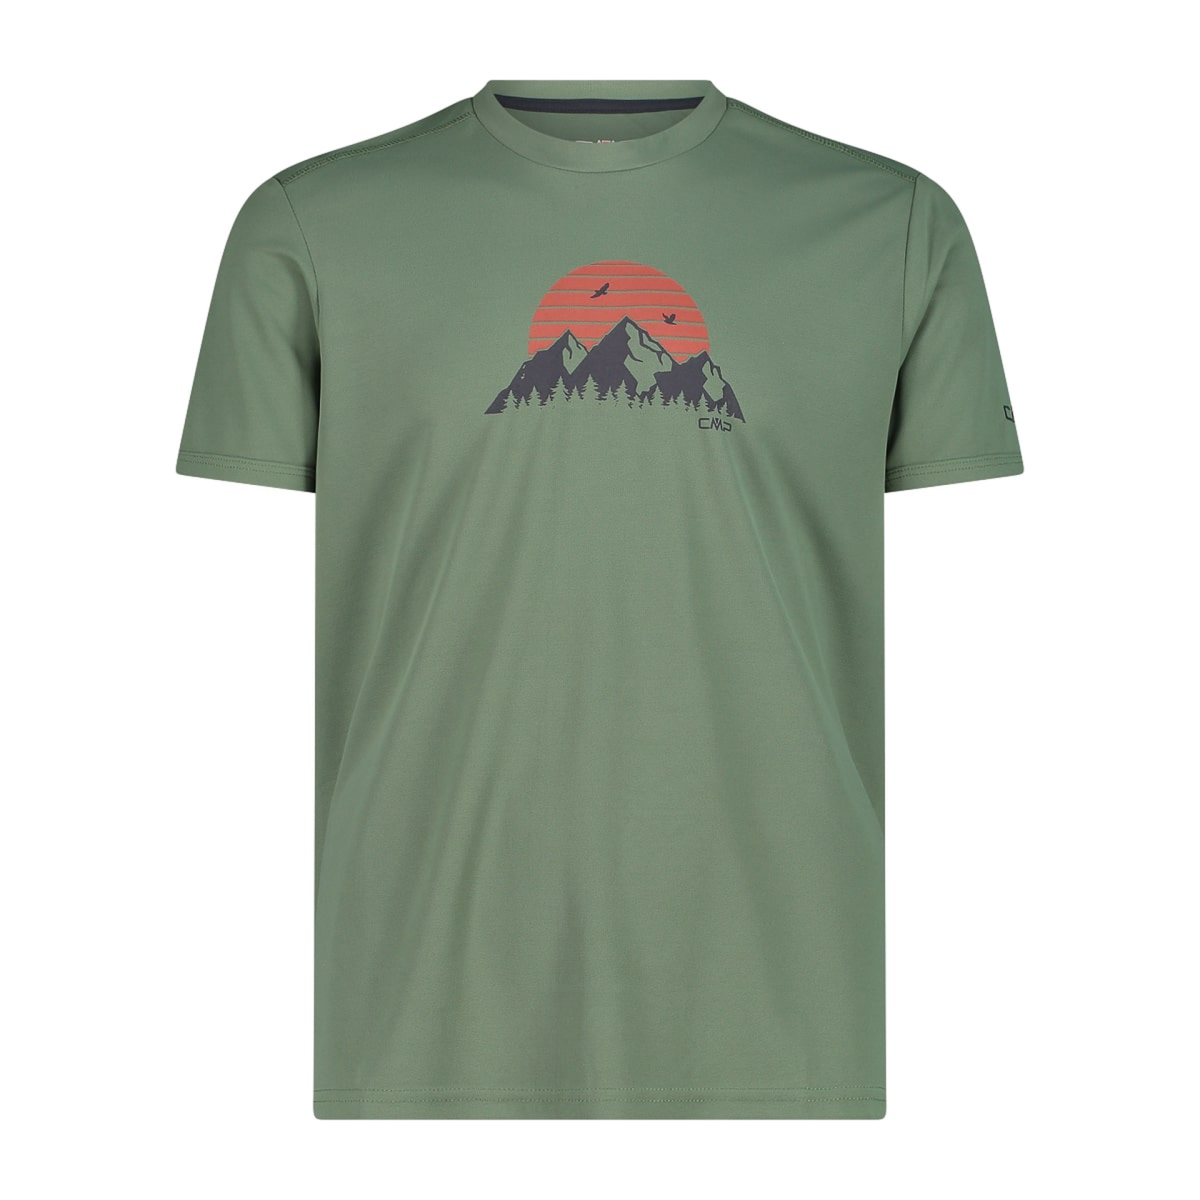 CMP Herren Pique Shirt Man T-Shirt  30T5057 salvia Adventure Print